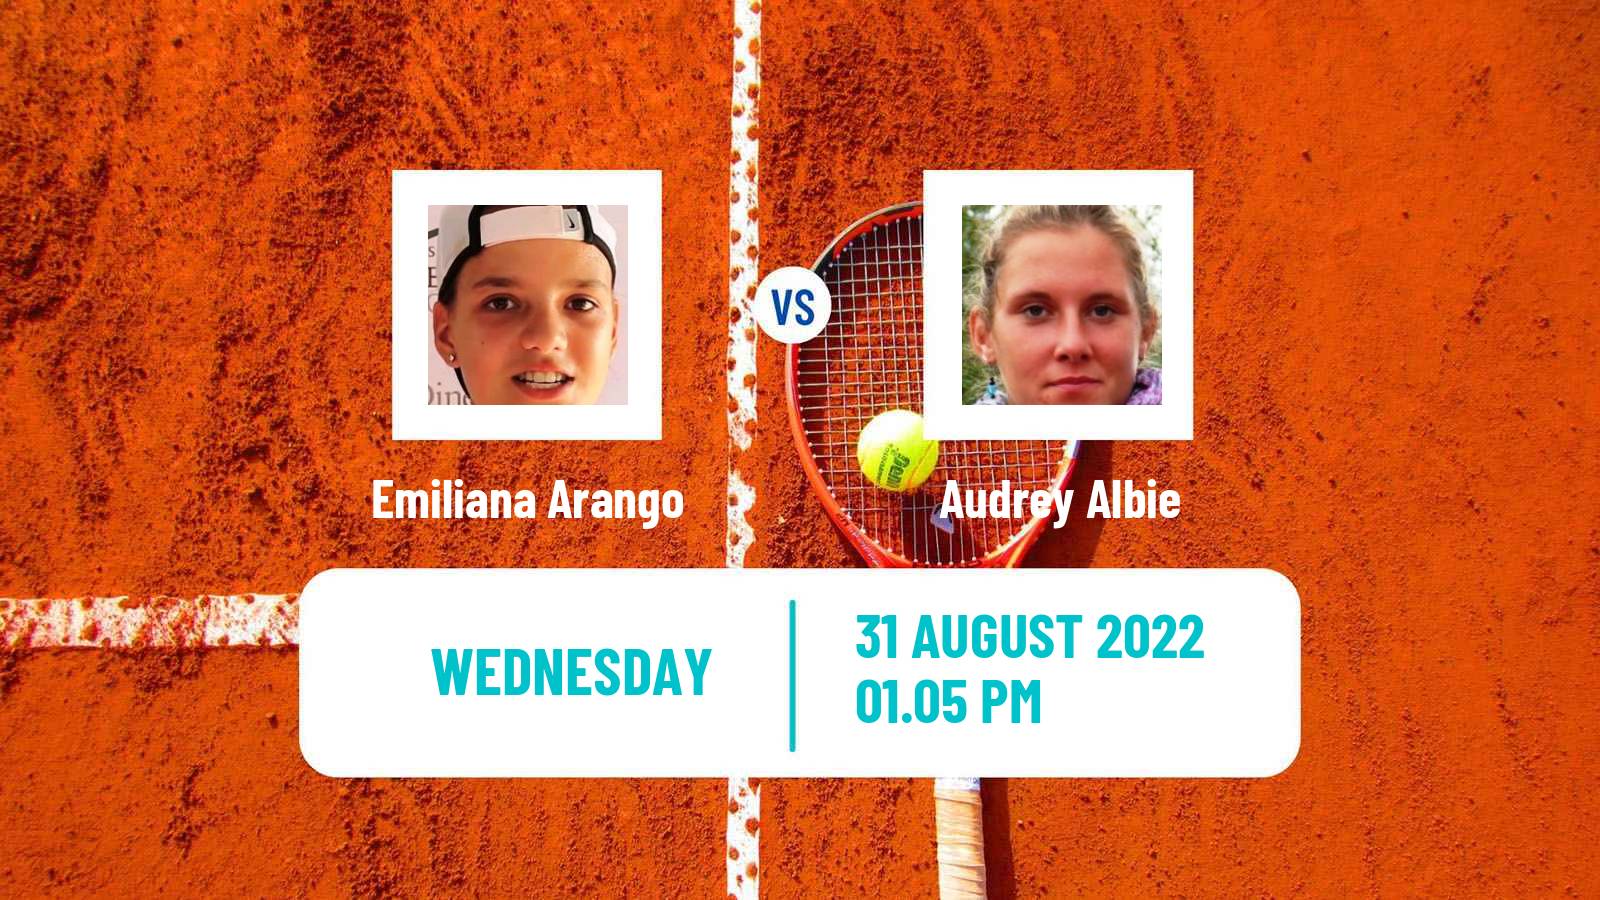 Tennis ITF Tournaments Emiliana Arango - Audrey Albie